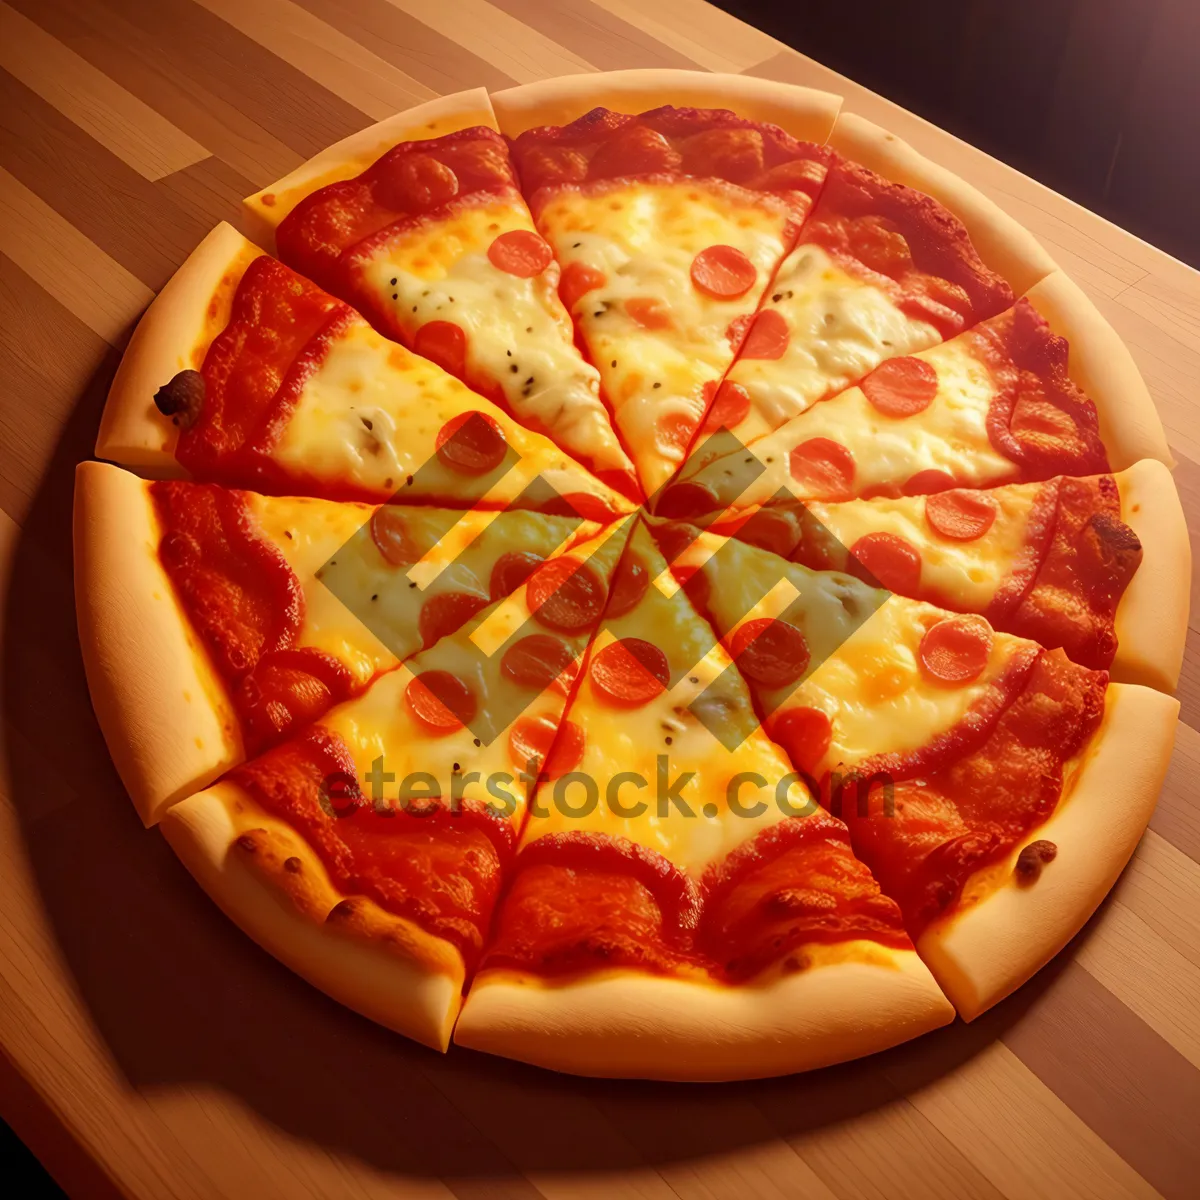 Picture of Delicious Pepperoni Pizza with Gooey Mozzarella